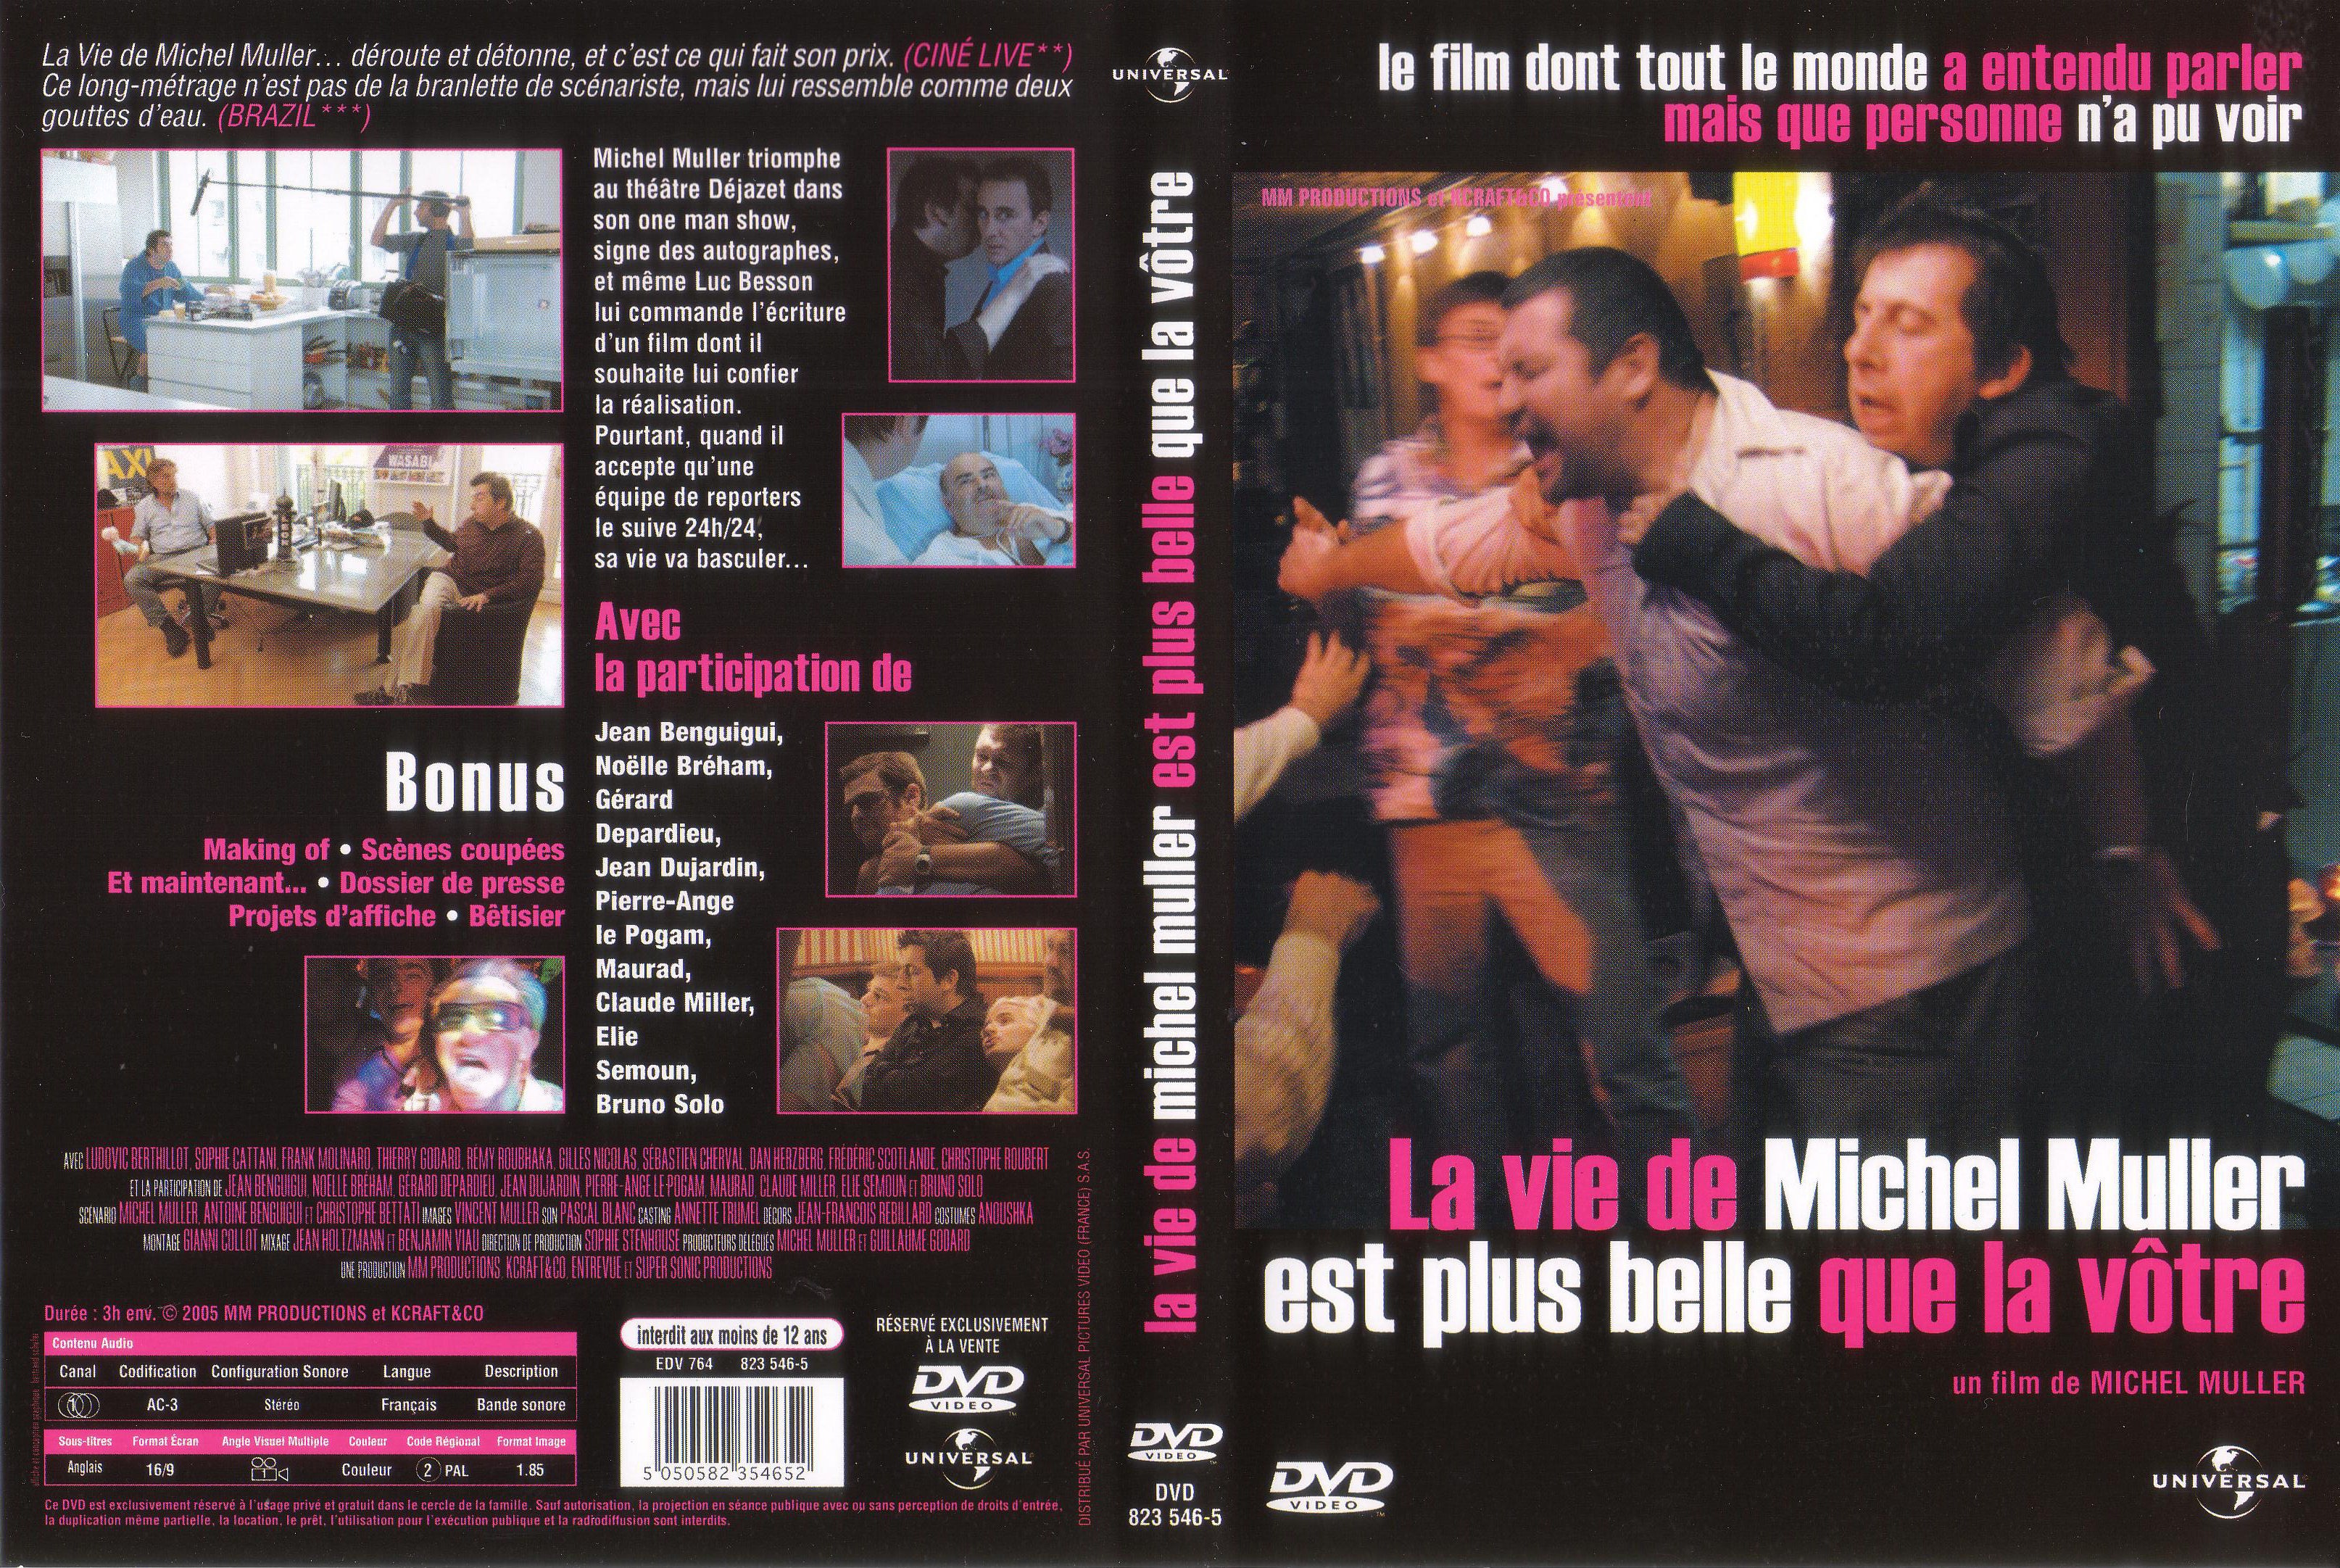 Jaquette DVD La vie de Michel Muller est plus belle que la votre